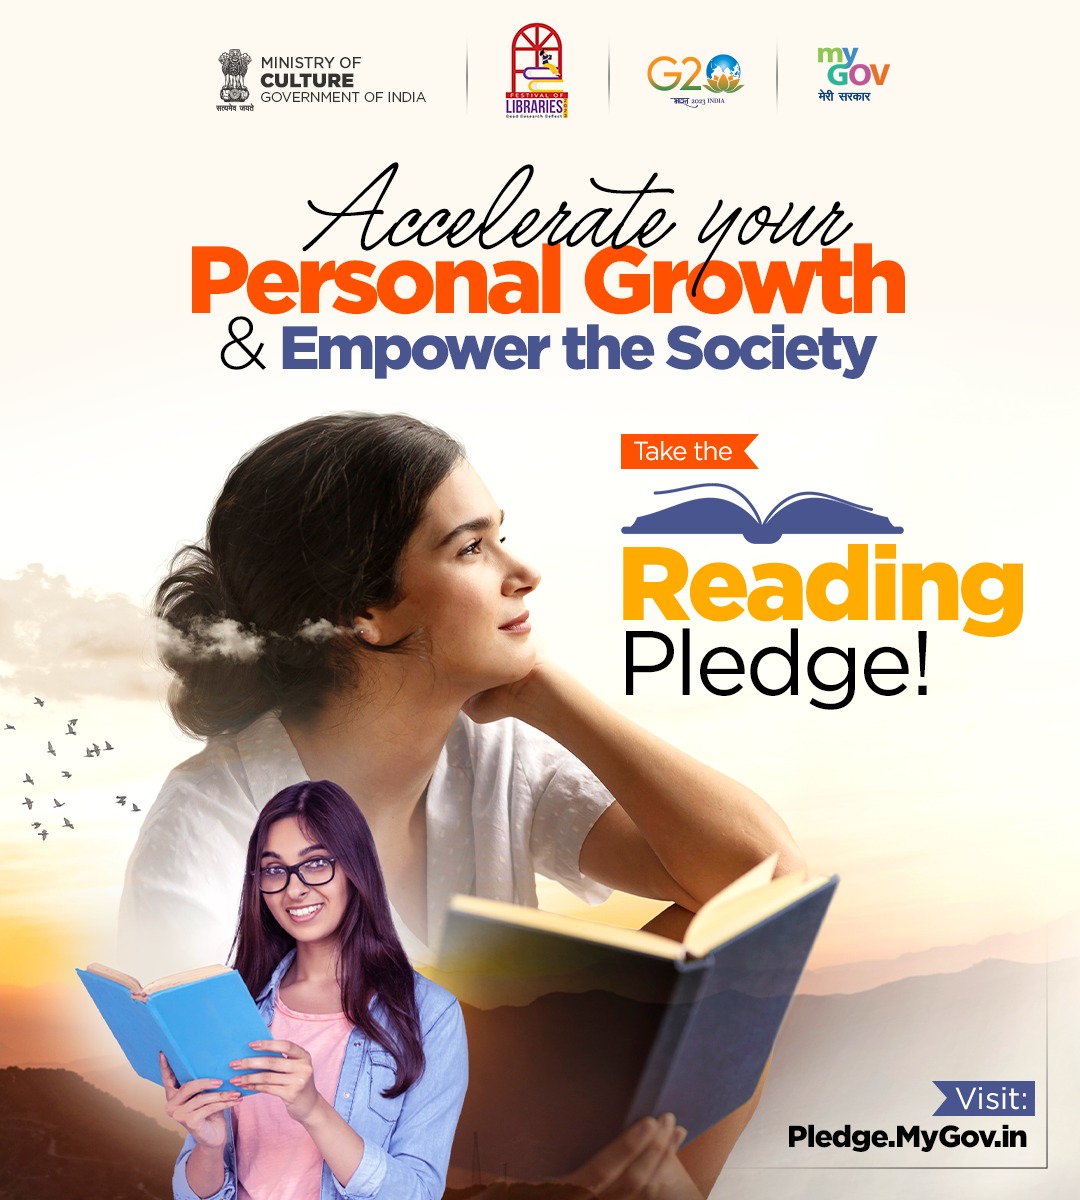 #MyGov-ലെ #ReadingPledge-ൽ പങ്കെടുക്കൂ, നിങ്ങളുടെ ദിനചര്യയിൽ വായന ഉൾപ്പെടുത്തുമെന്ന് പ്രതിജ്ഞയെടുക്കൂ! നമുക്ക് ഒരുമിച്ച് വായനയുടെ ആനന്ദം വളർത്തിയെടുക്കാം.

സന്ദർശിക്കൂ: pledge.mygov.in/reading-pledge/  
#books

@MinOfCultureGoI